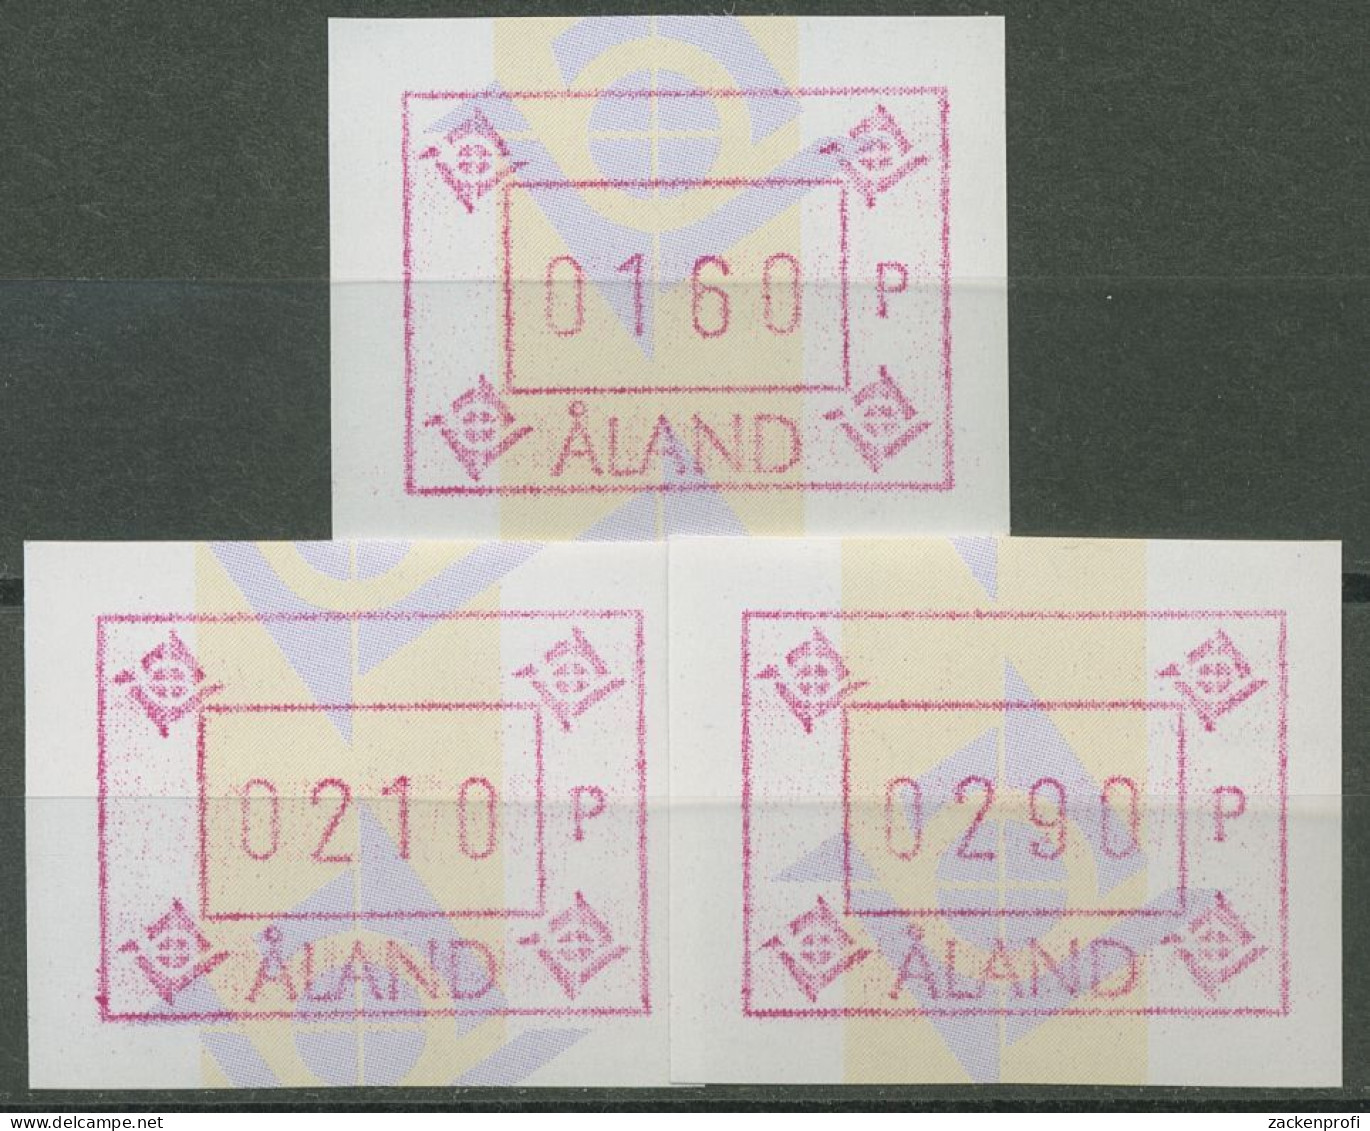 Aland 1993 ATM Satz 3 Werte Mit WZ 1 ATM Satz 5 Yc S1 Postfrisch - Aland